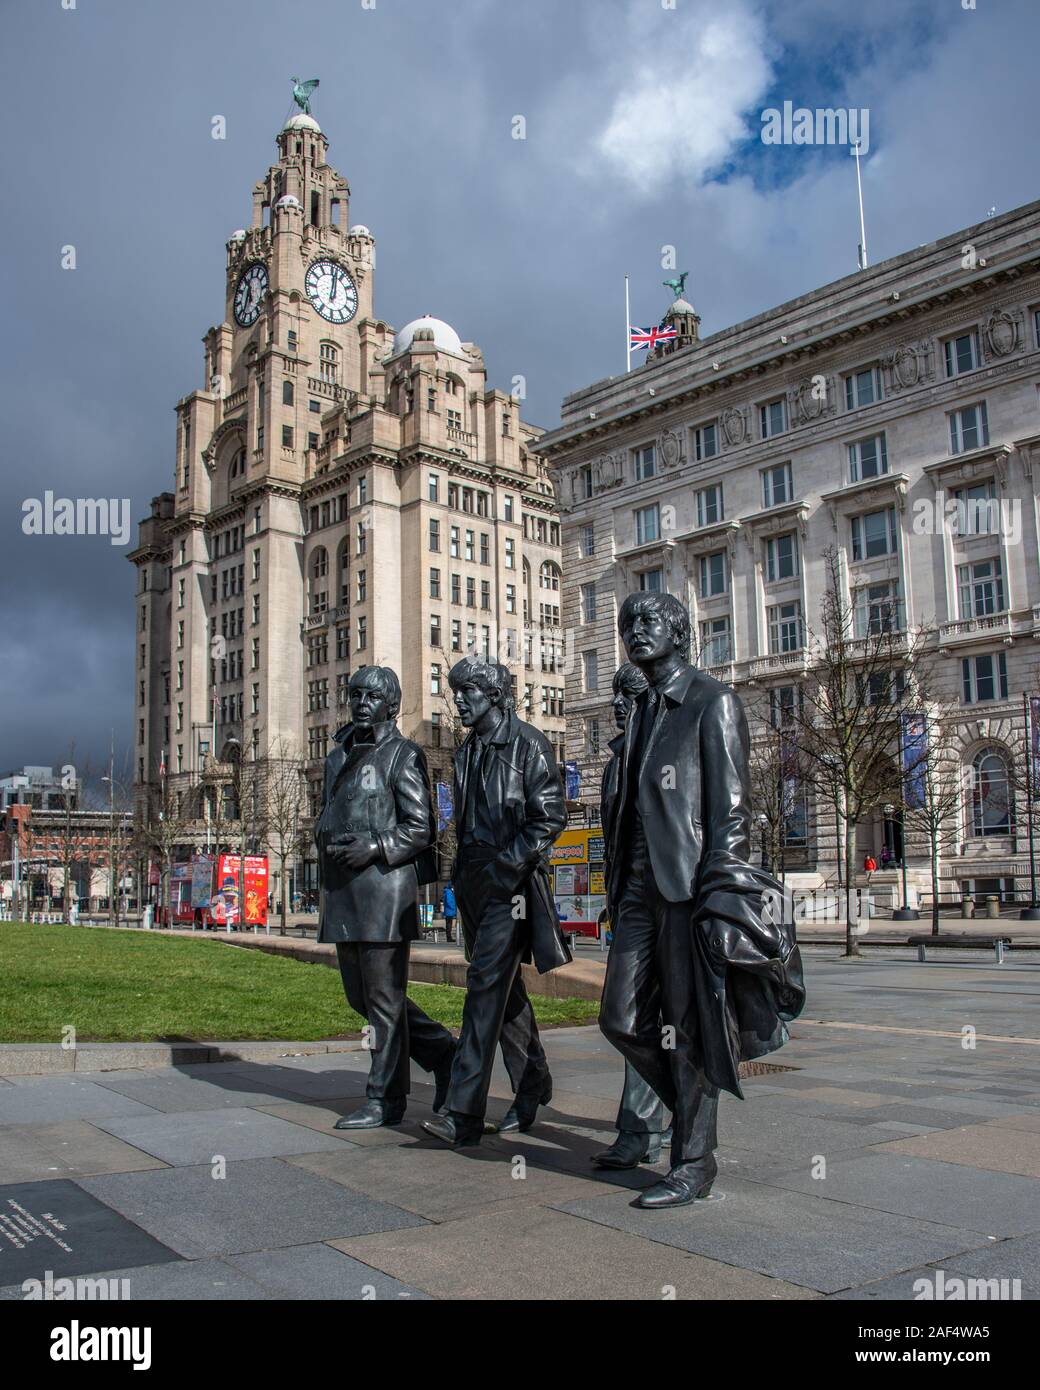 Liverpool, Regno Unito - 17 Marzo 2019: statua in bronzo del Beatles permanente sulla Liverpool è Pier Head waterfront, scolpito da Andrea Edwards Foto Stock